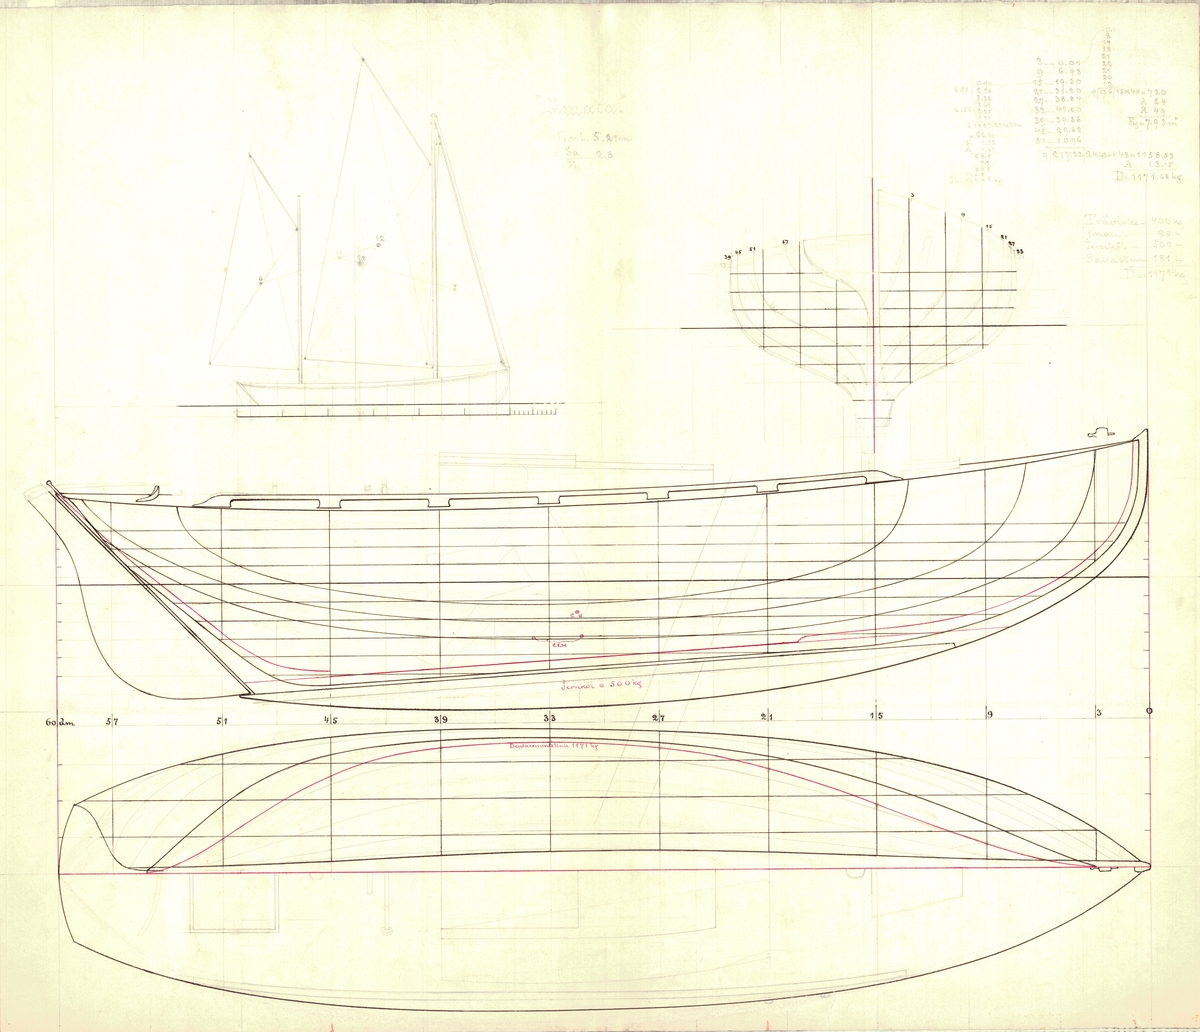 Tvåmastad segelkanot med centerbord.
Spantruta, segel-, profil- och linjeritning